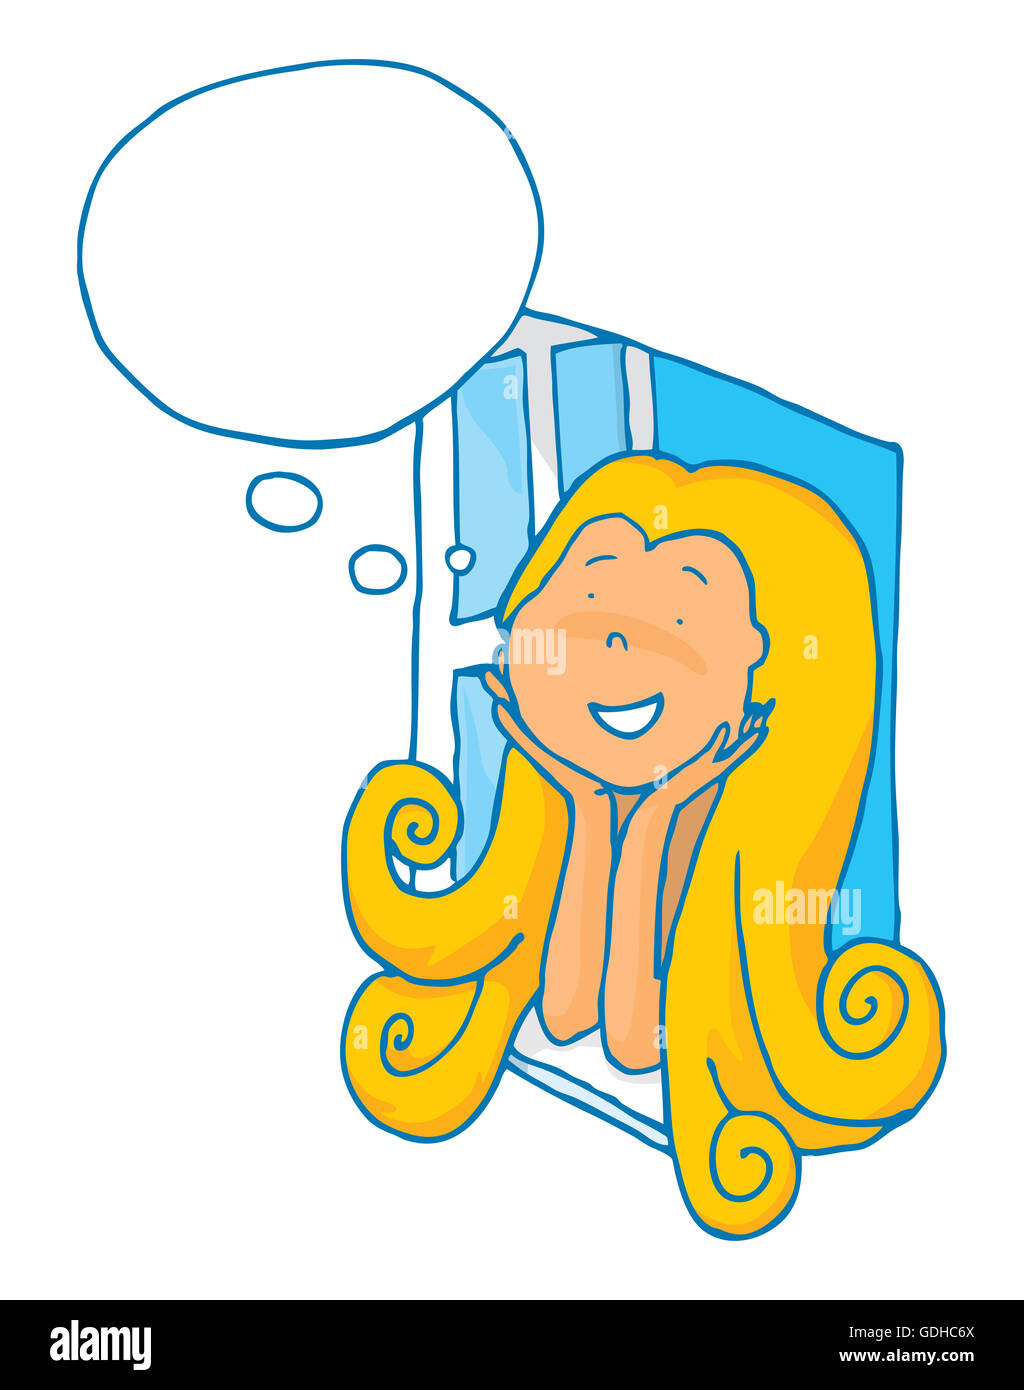 Cartoon illustration de jolie fille à l'aide de son imagination avec bulle pensée vierge Banque D'Images